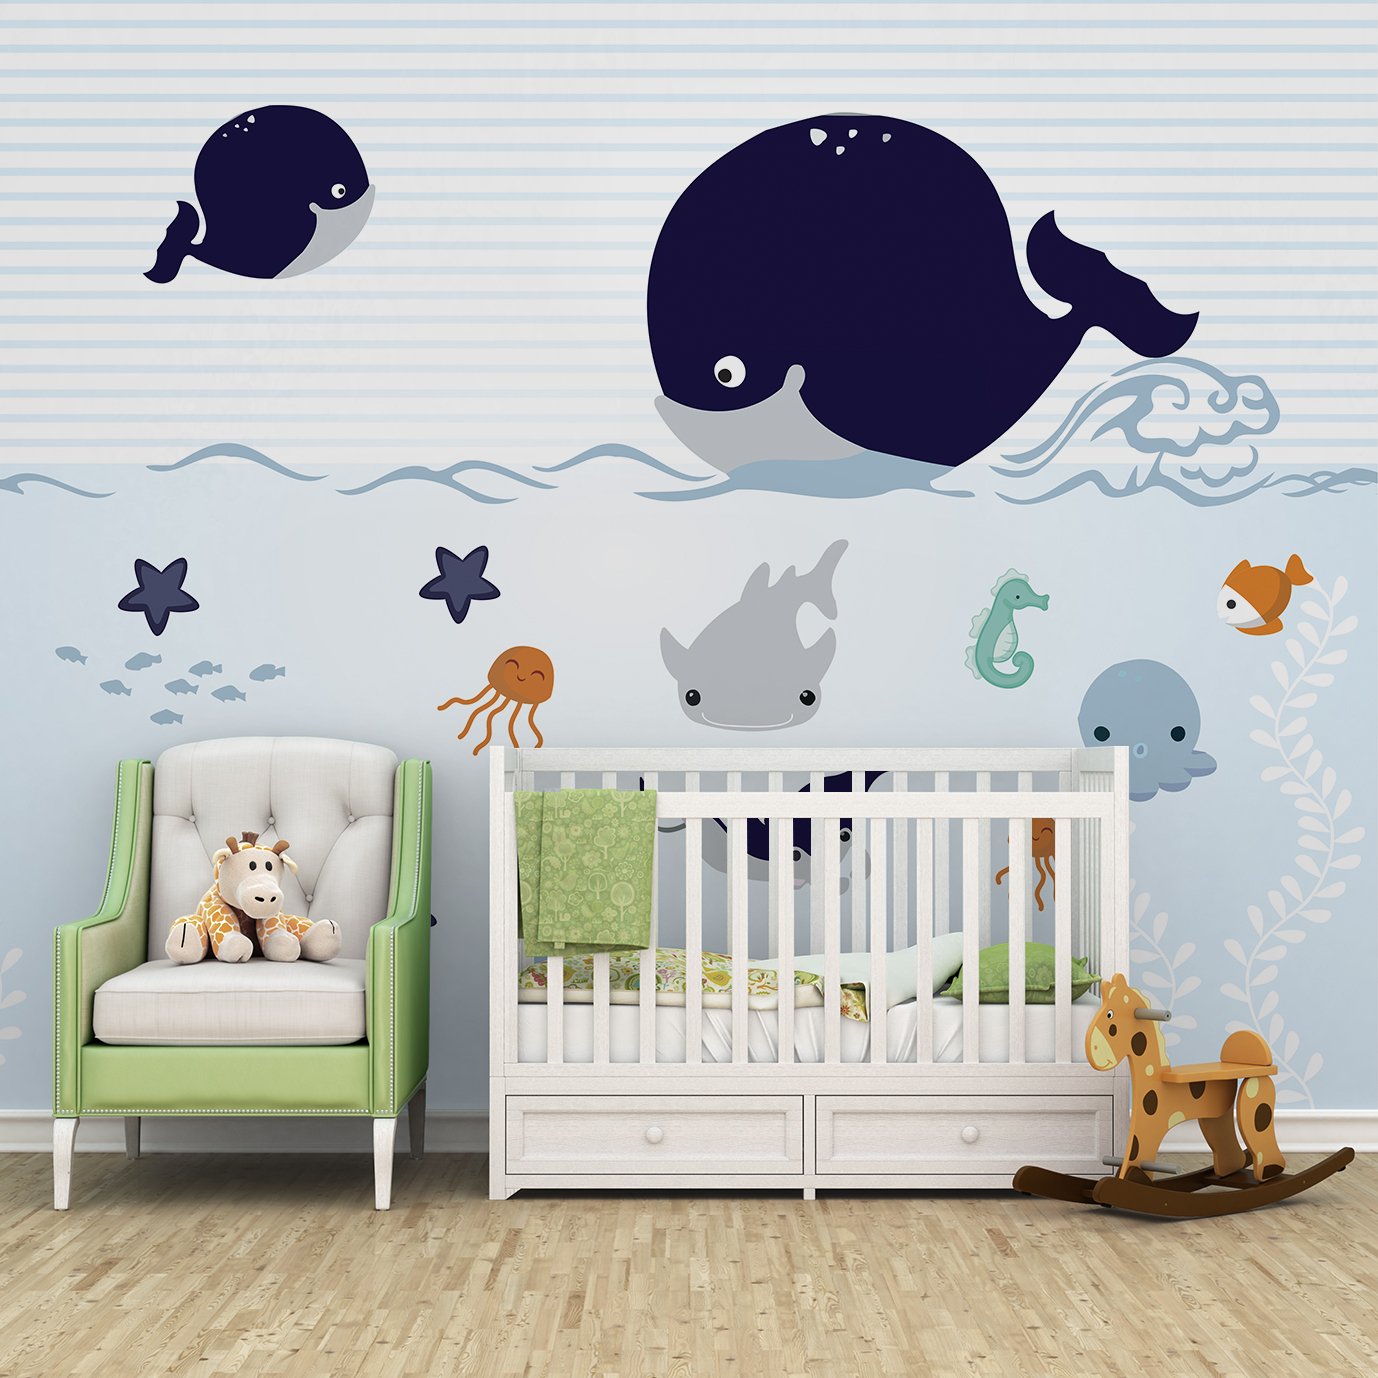 Papel de parede fundo do mar infantil para quarto de bebê VR47 - 2